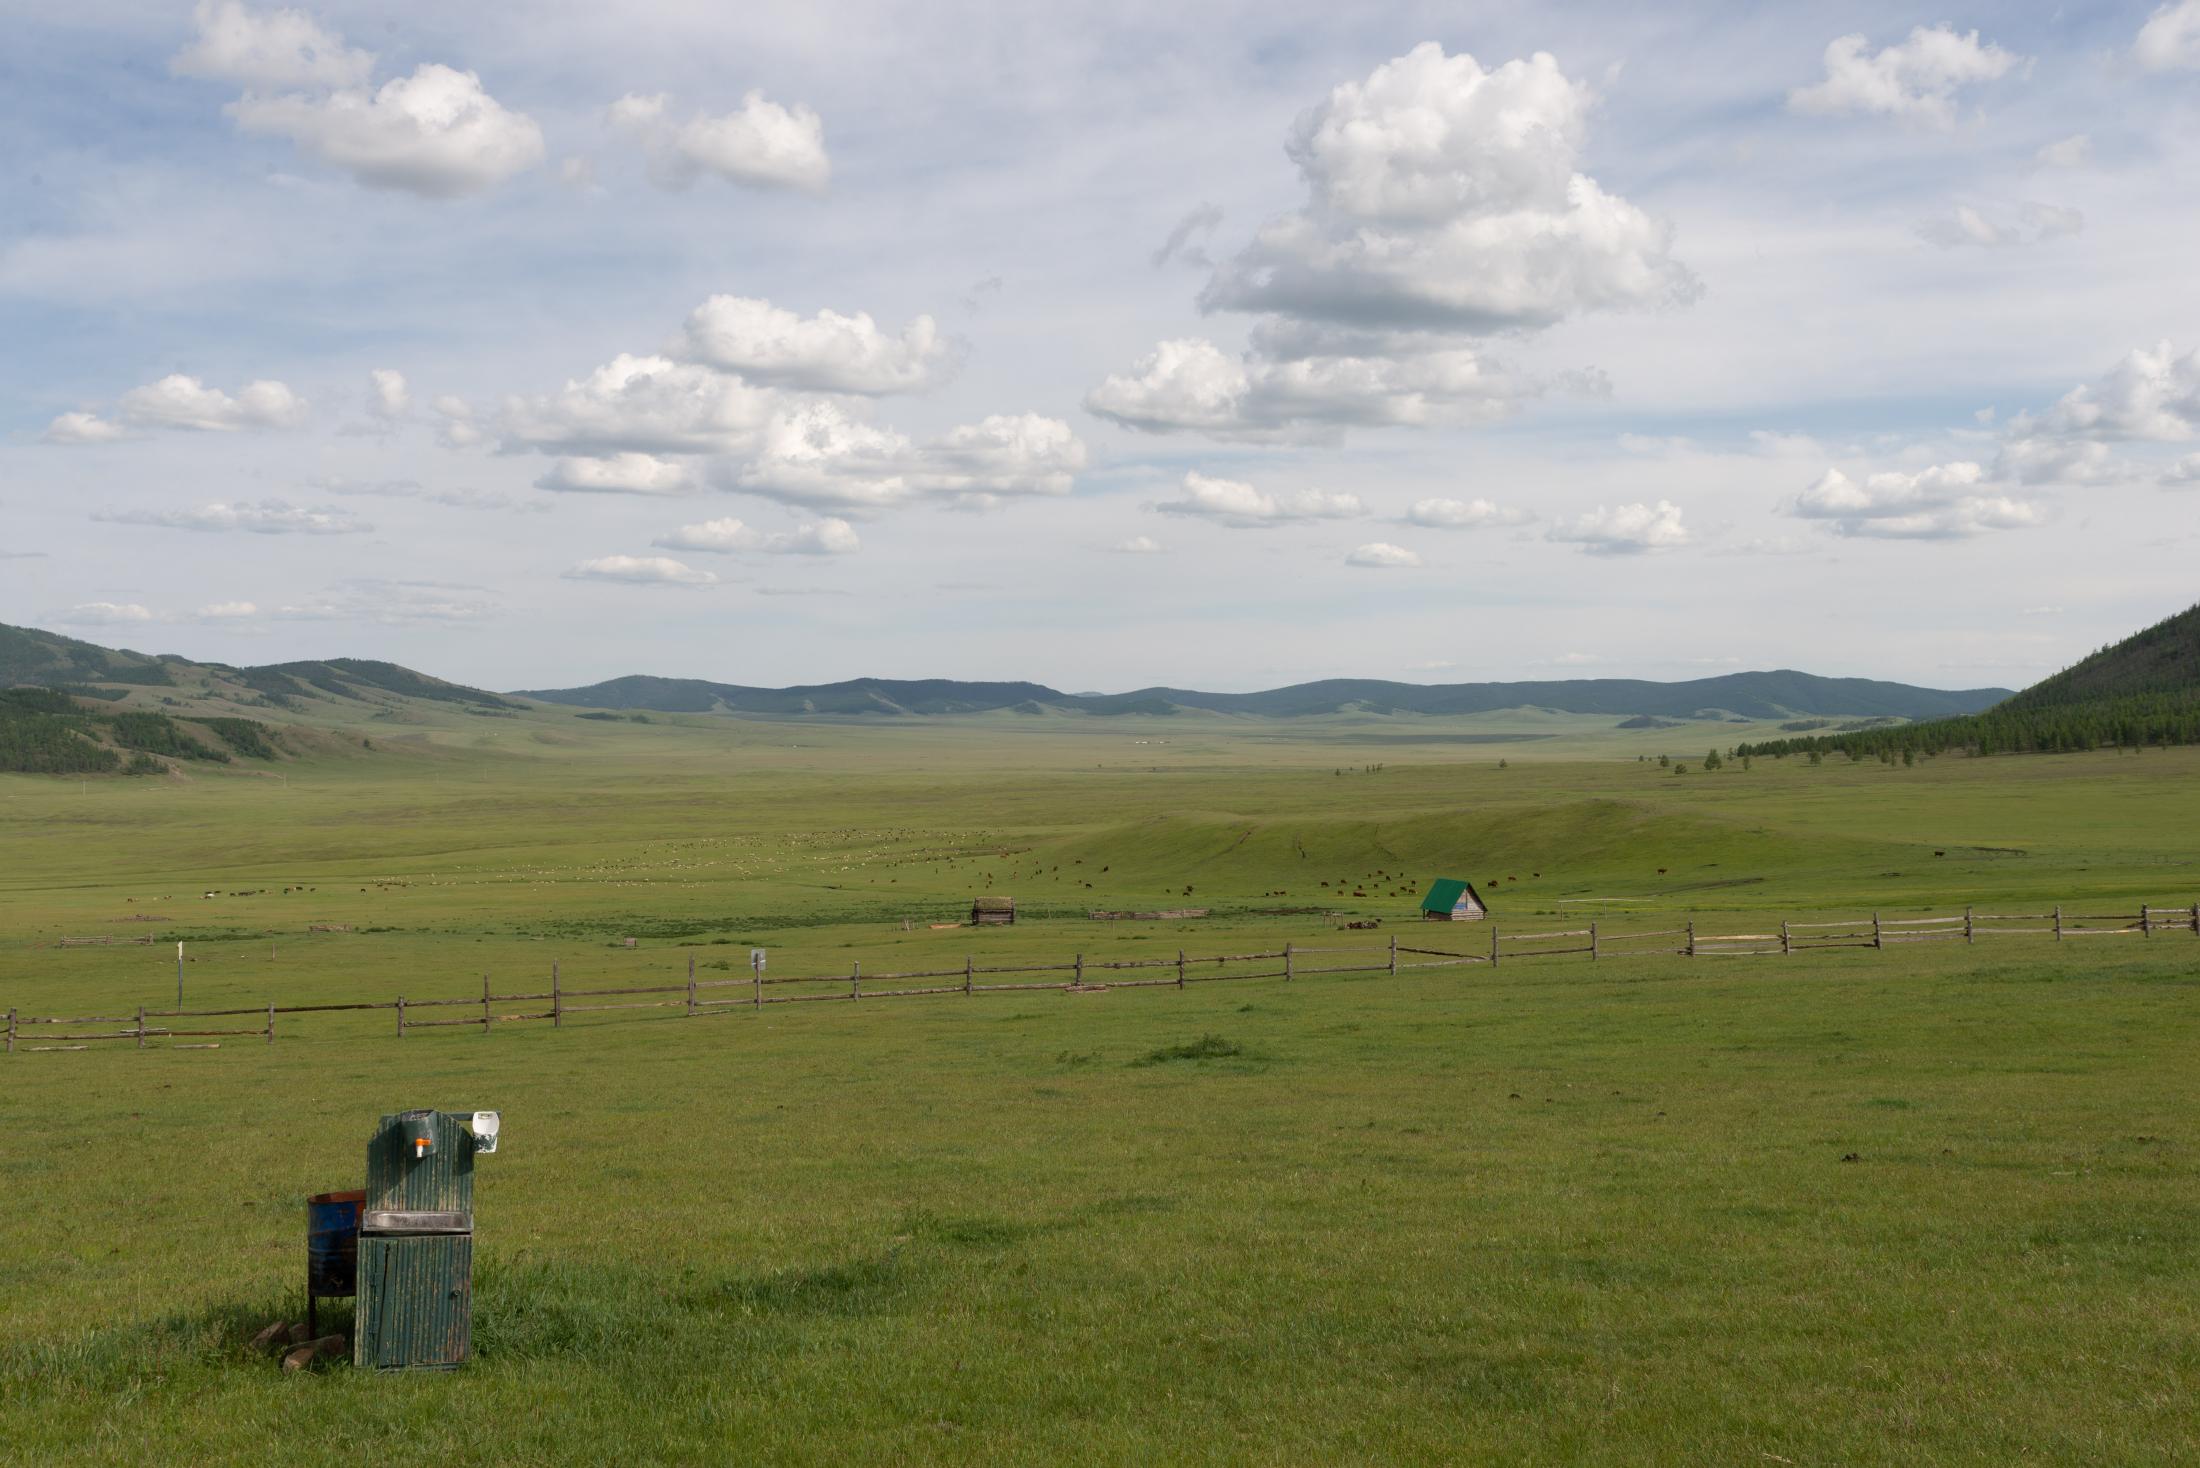 Mongolie / Mongolia 2019